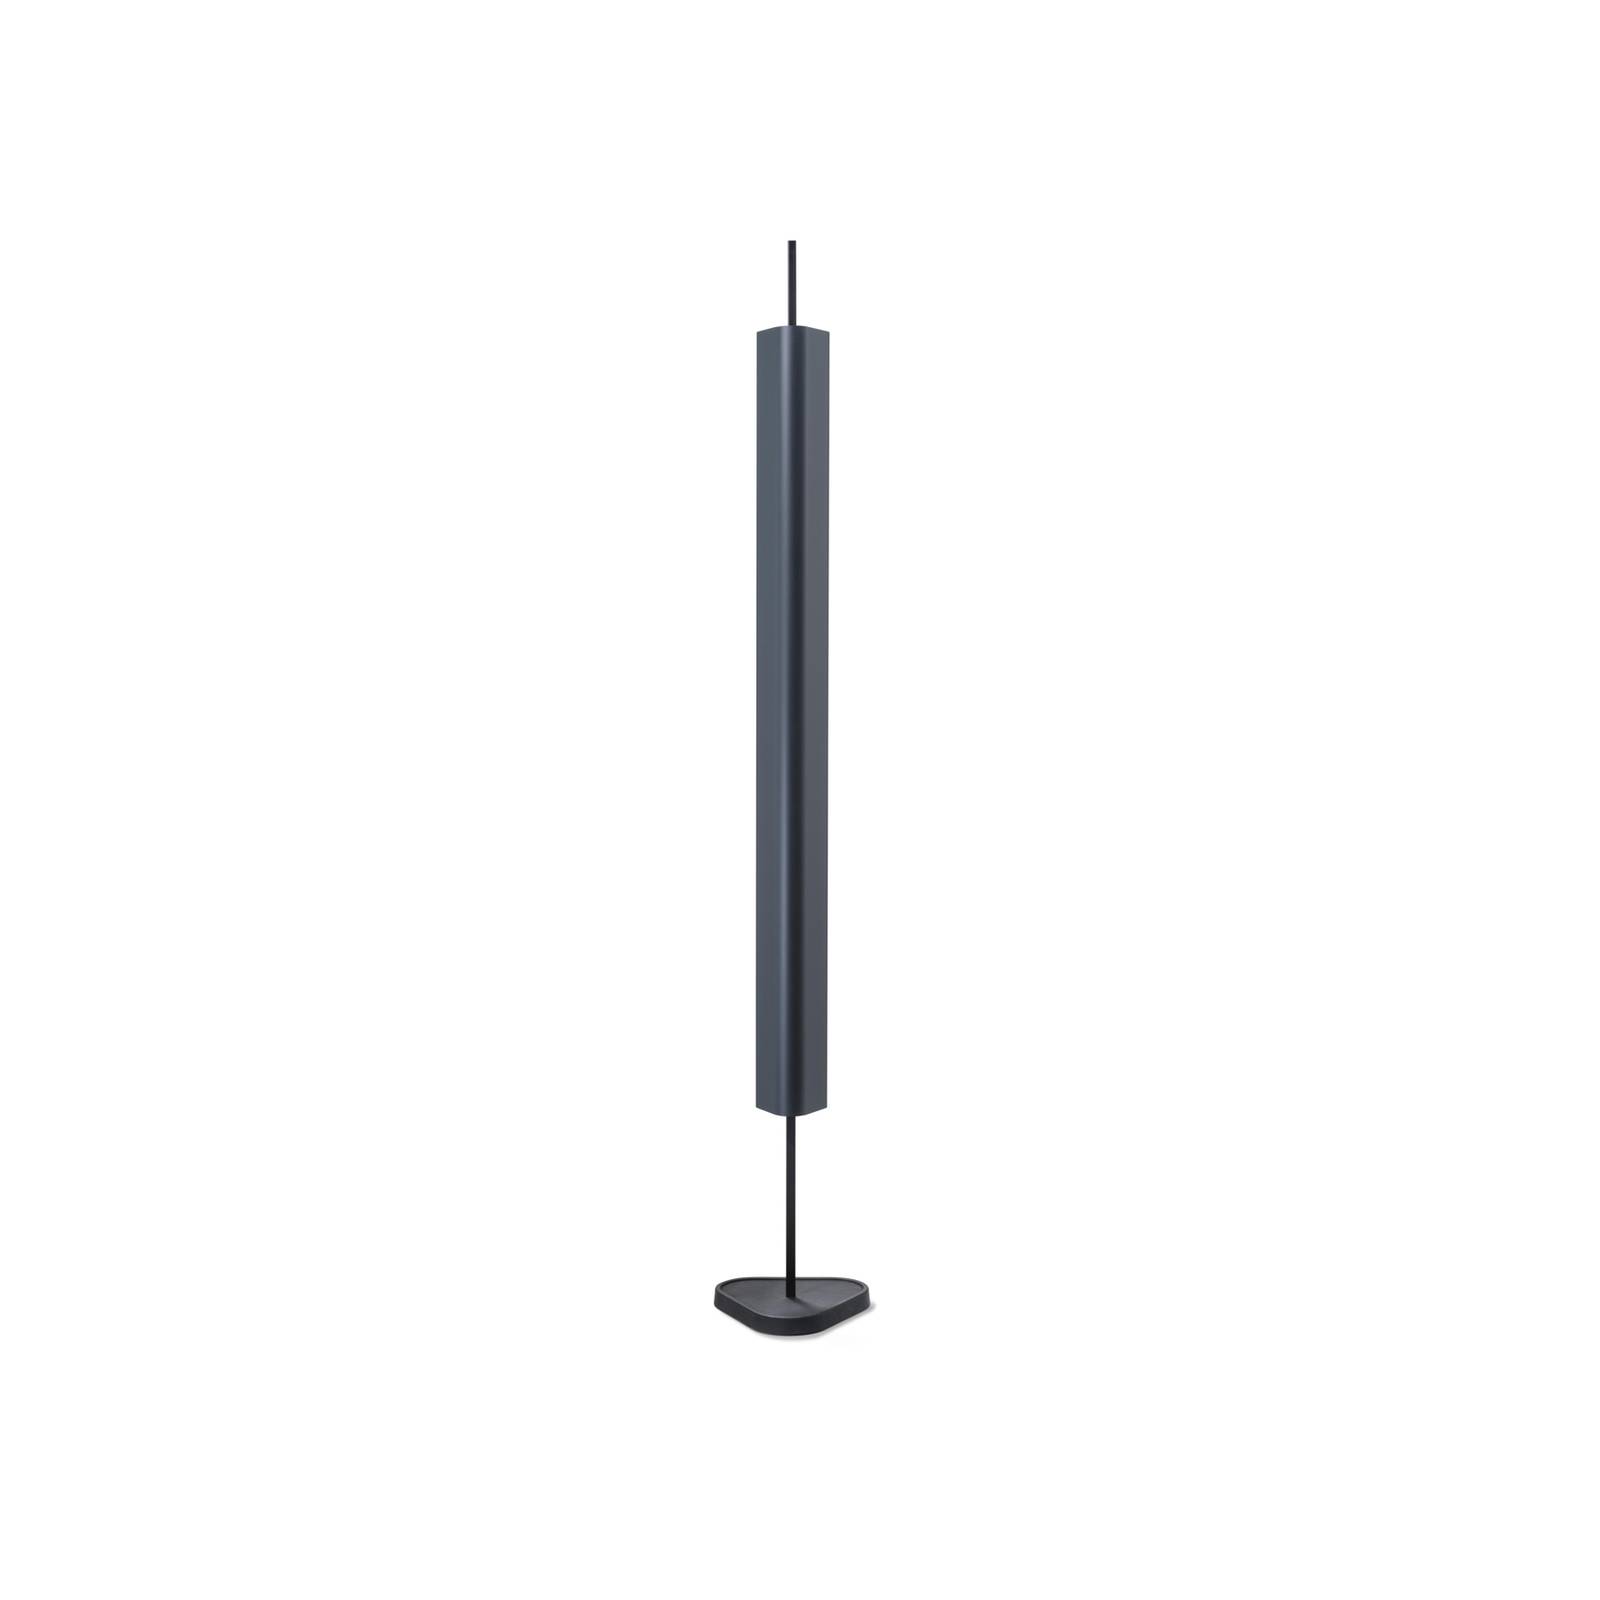 Flos led állólámpa emi, sötétkék, fényerőszabályzó, magasság 170 cm